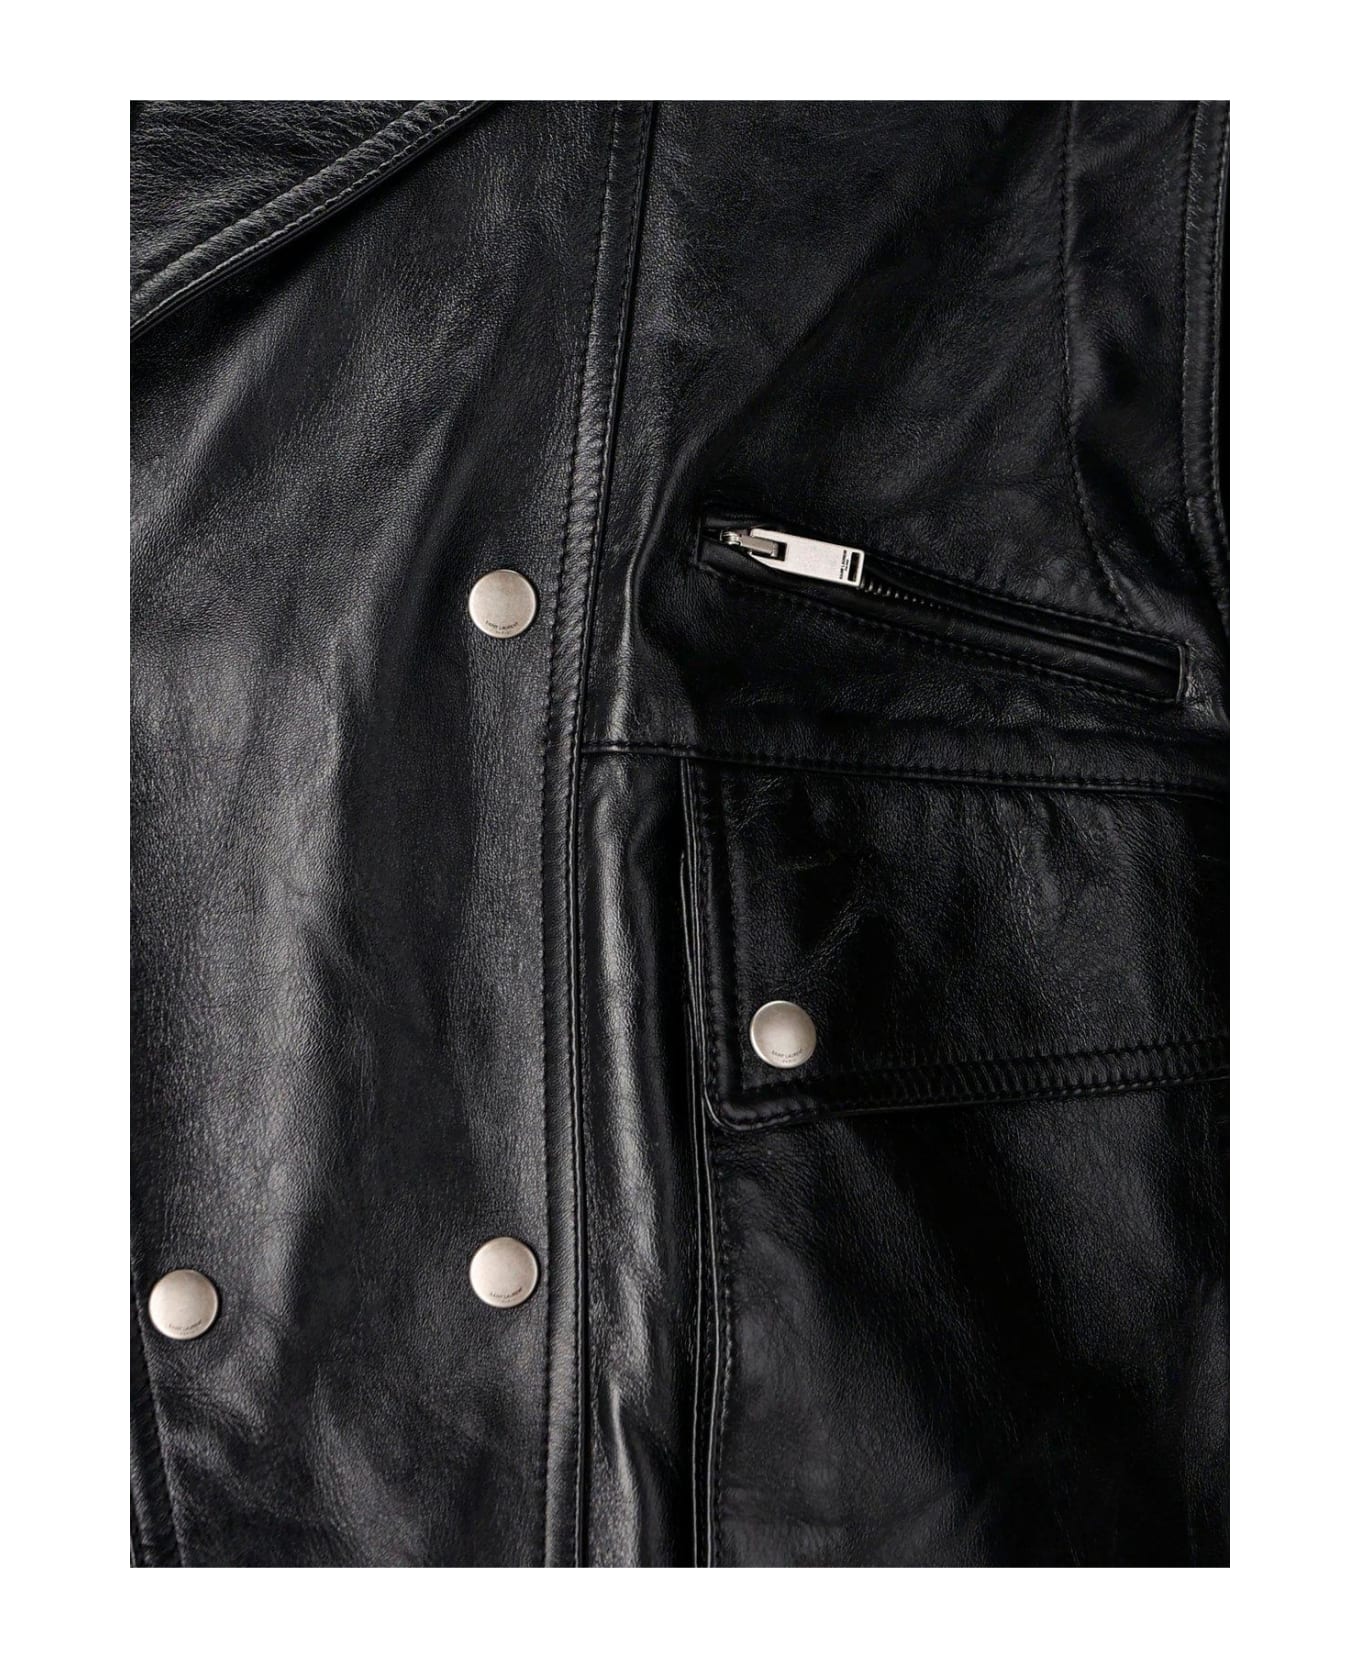 Saint Laurent Biker Leather Jacket